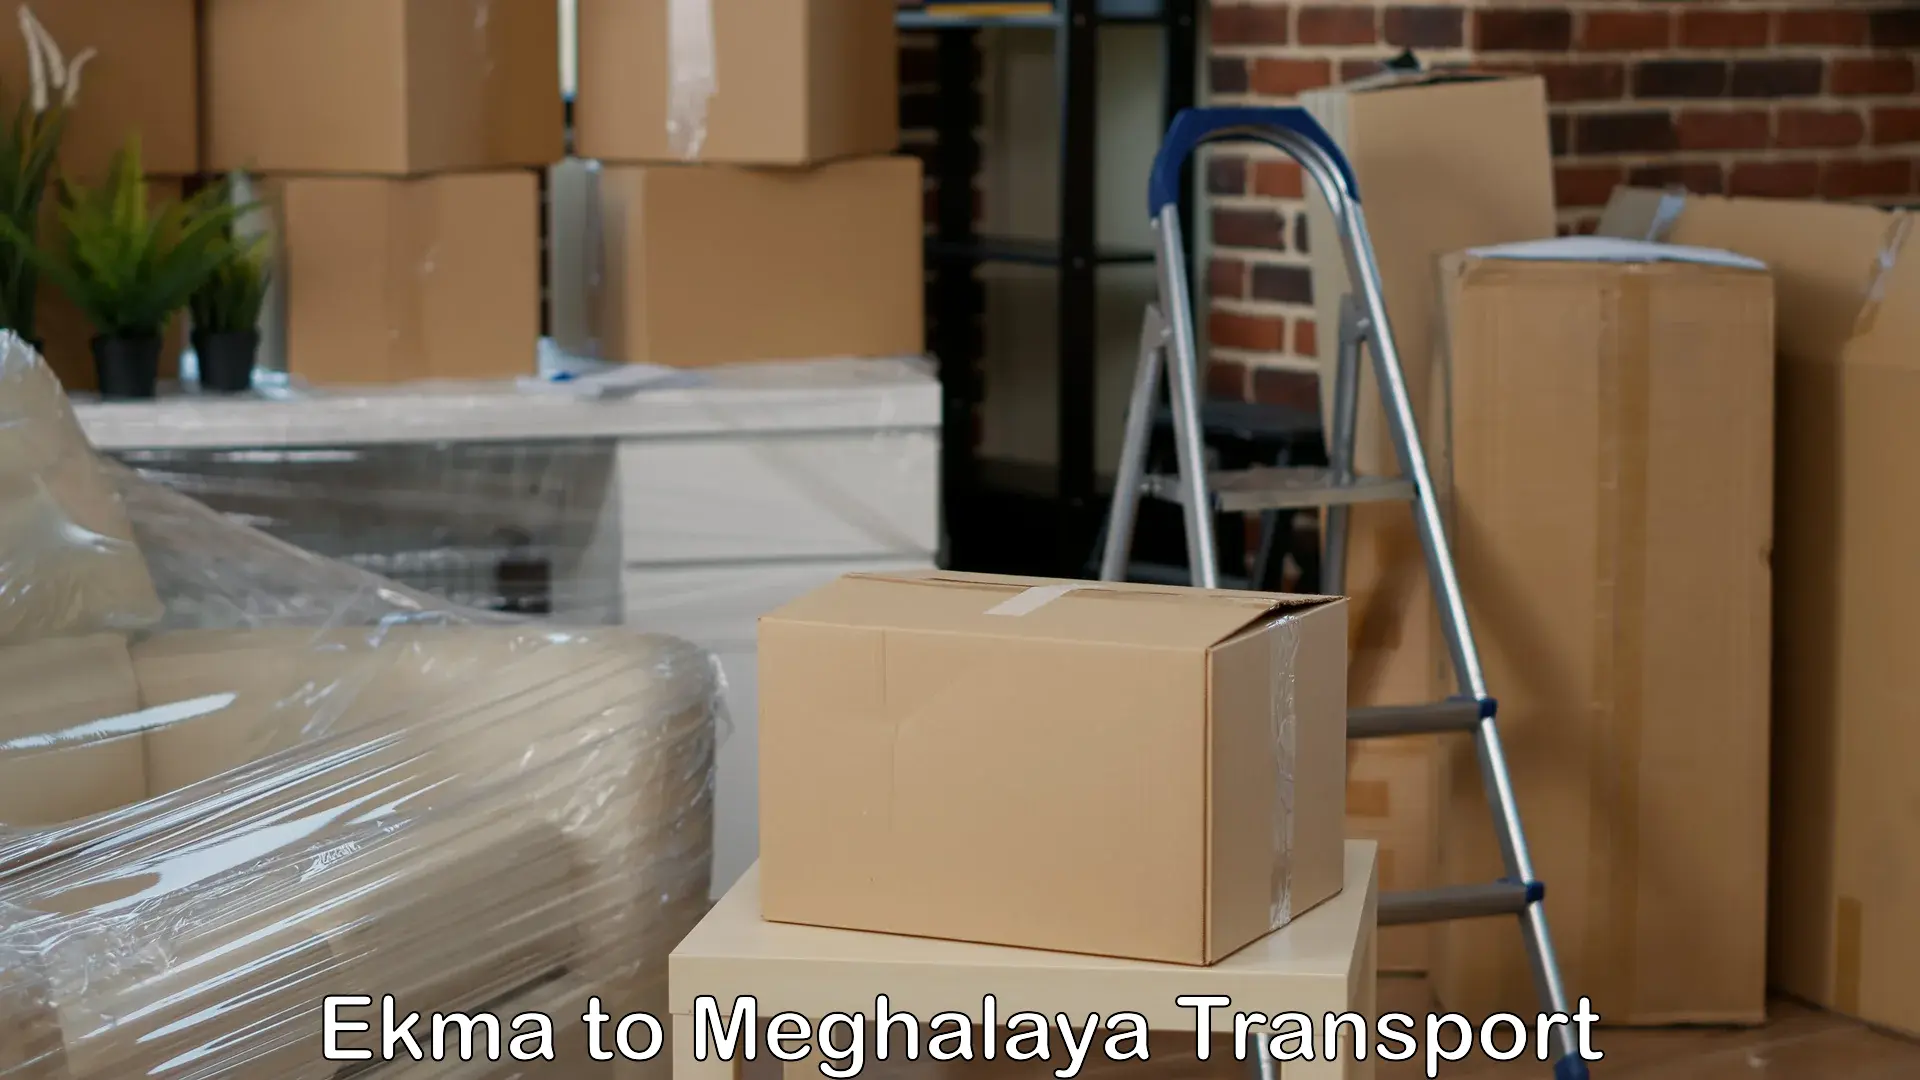 Cargo transport services Ekma to Shillong